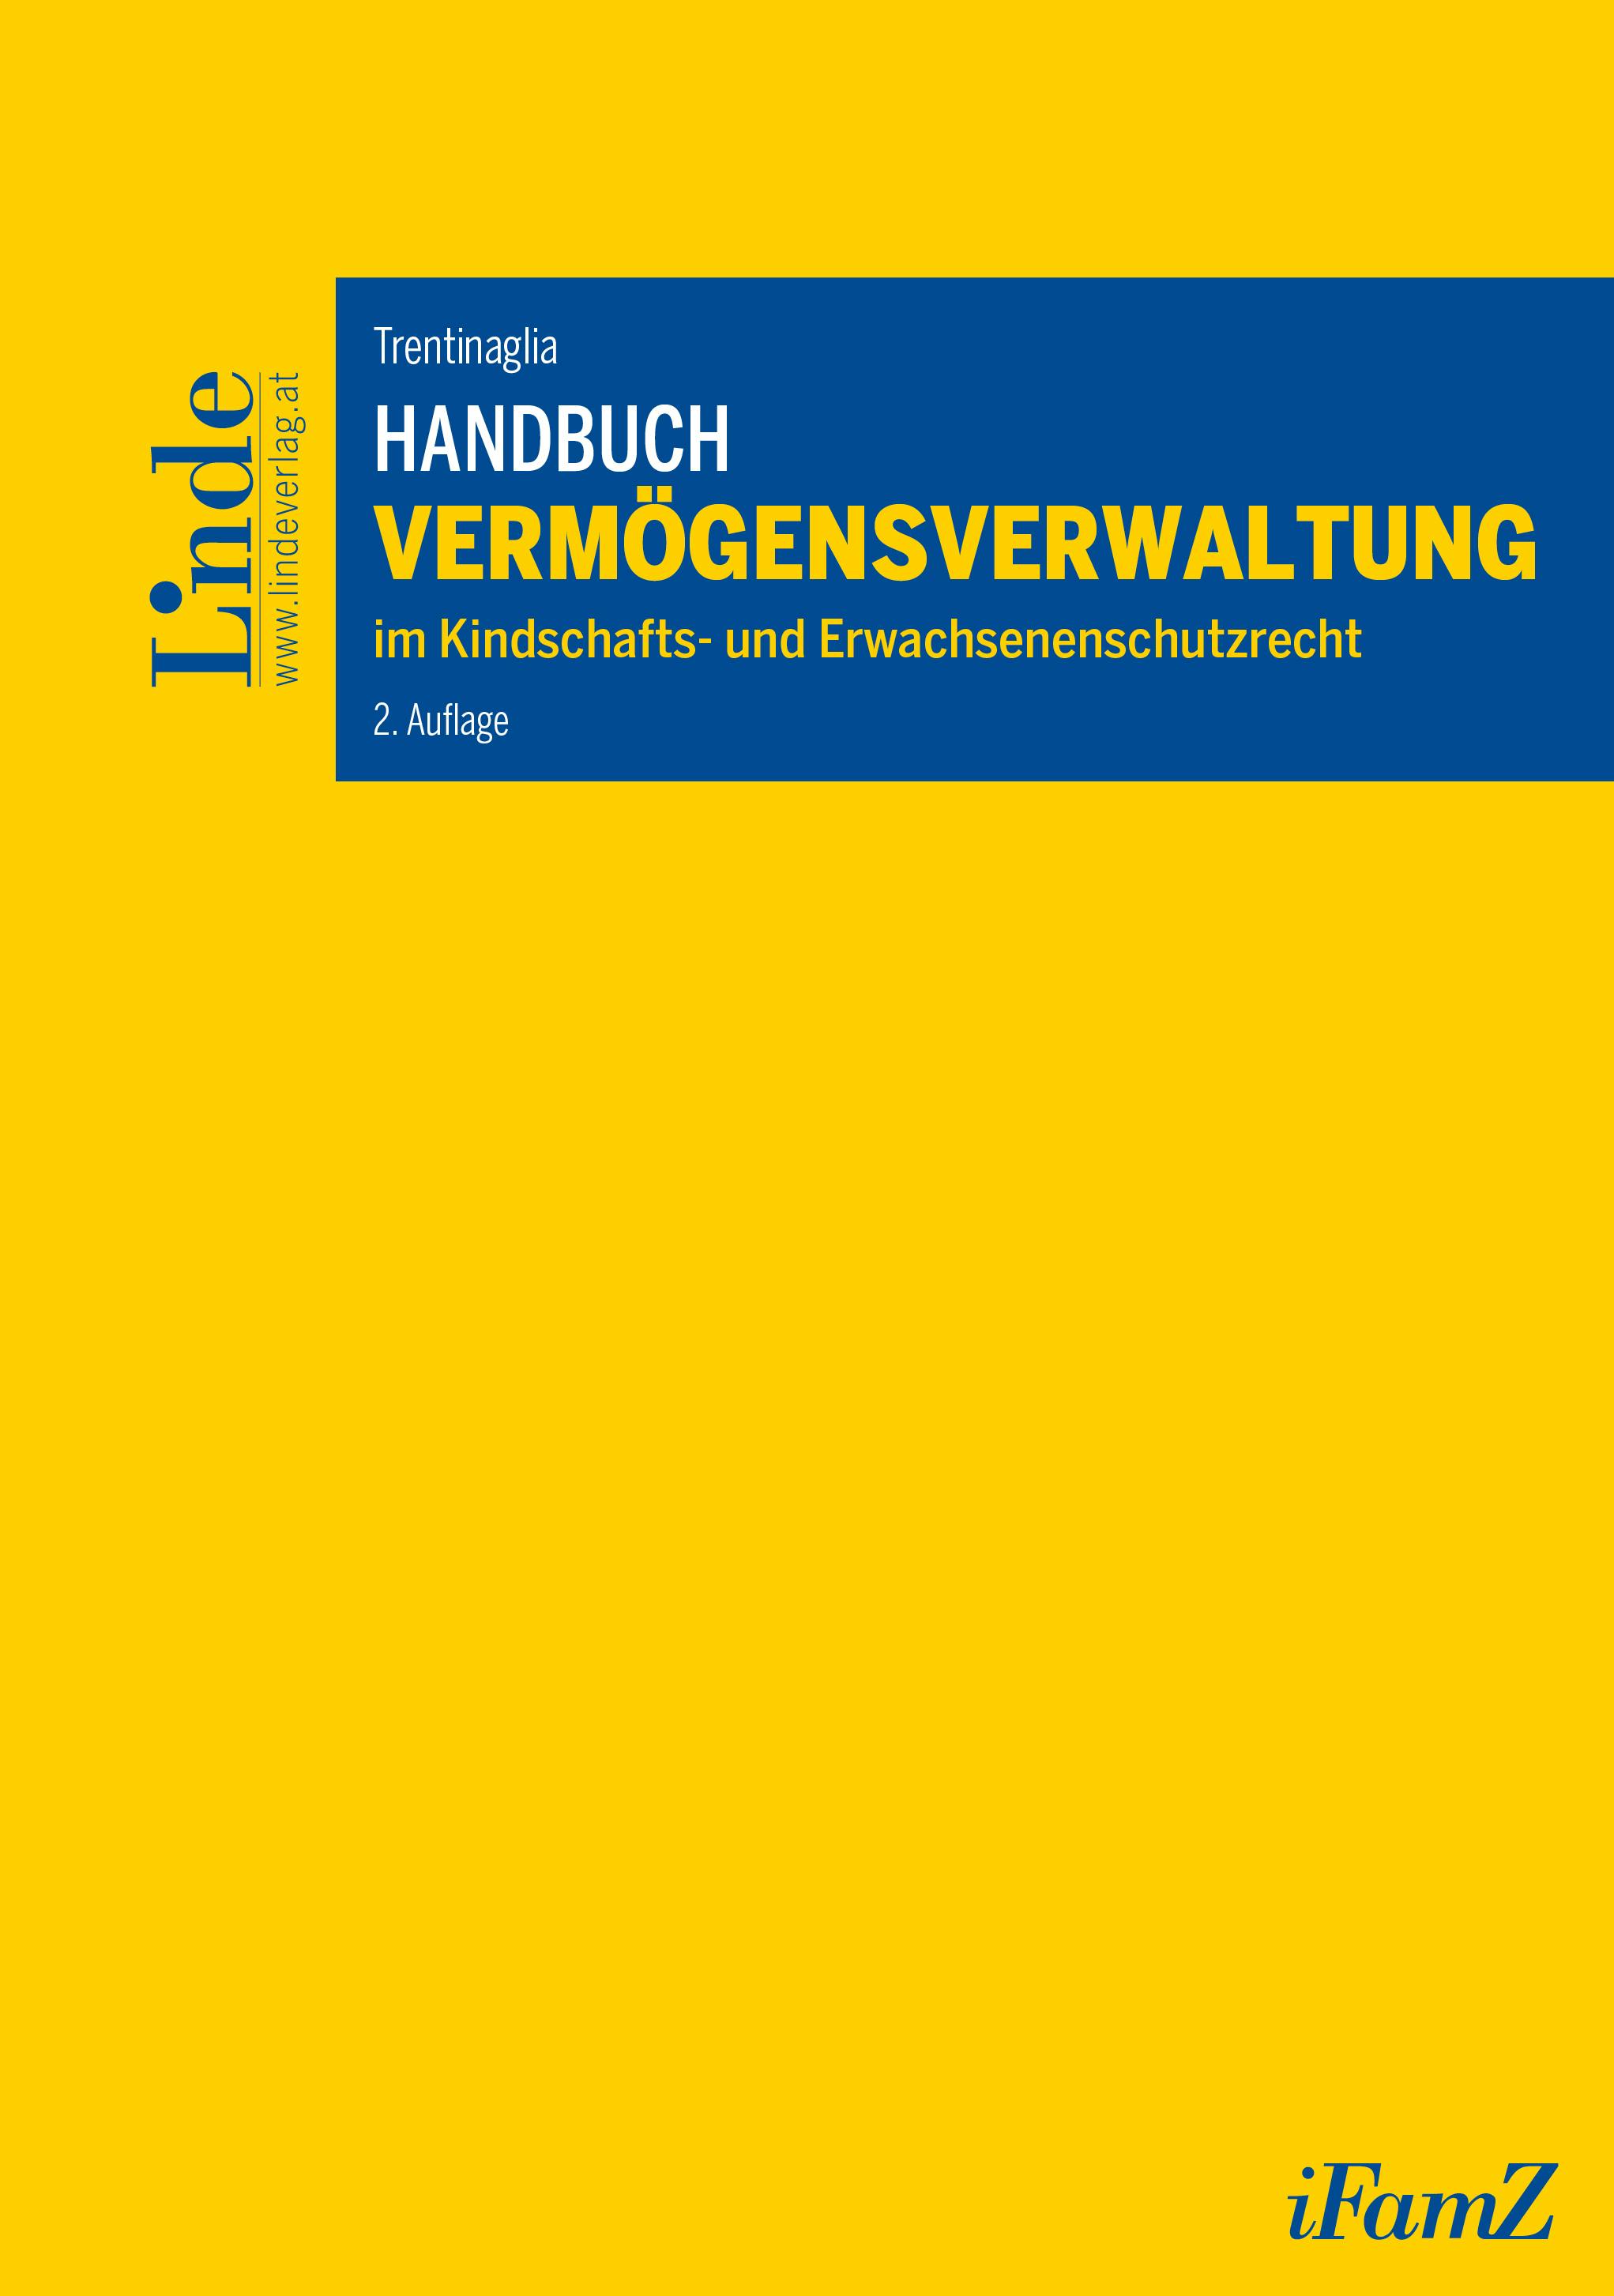 Trentinaglia
Handbuch Vermögensverwaltung im Kindschafts- und Erwachsenenschutzrecht
Schriftenreihe iFamZ